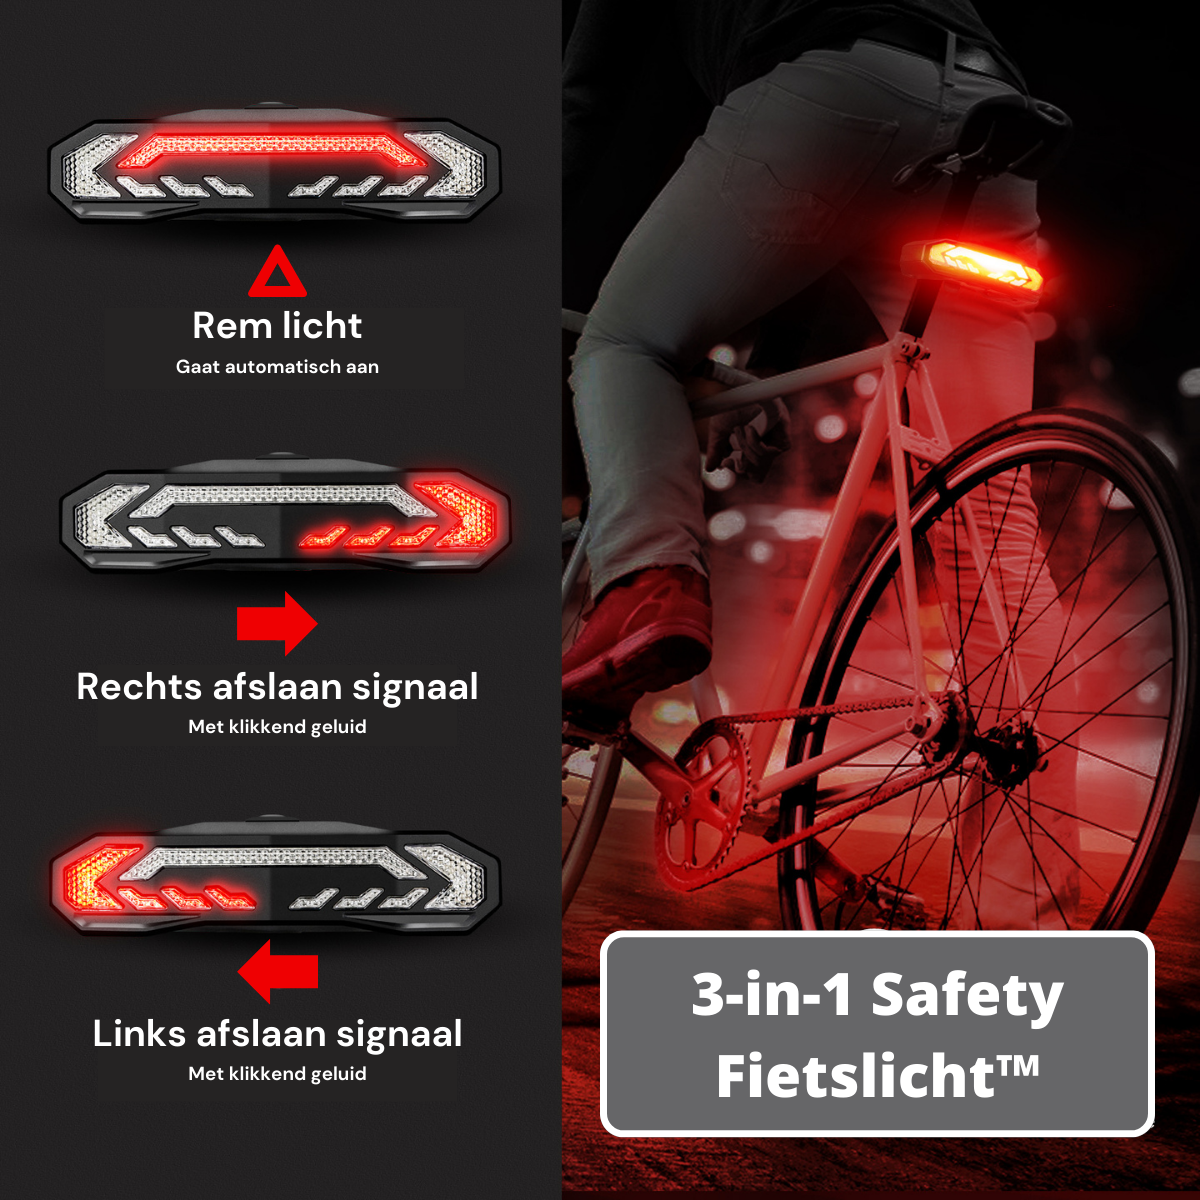 3-in-1 Safety Fietslicht™